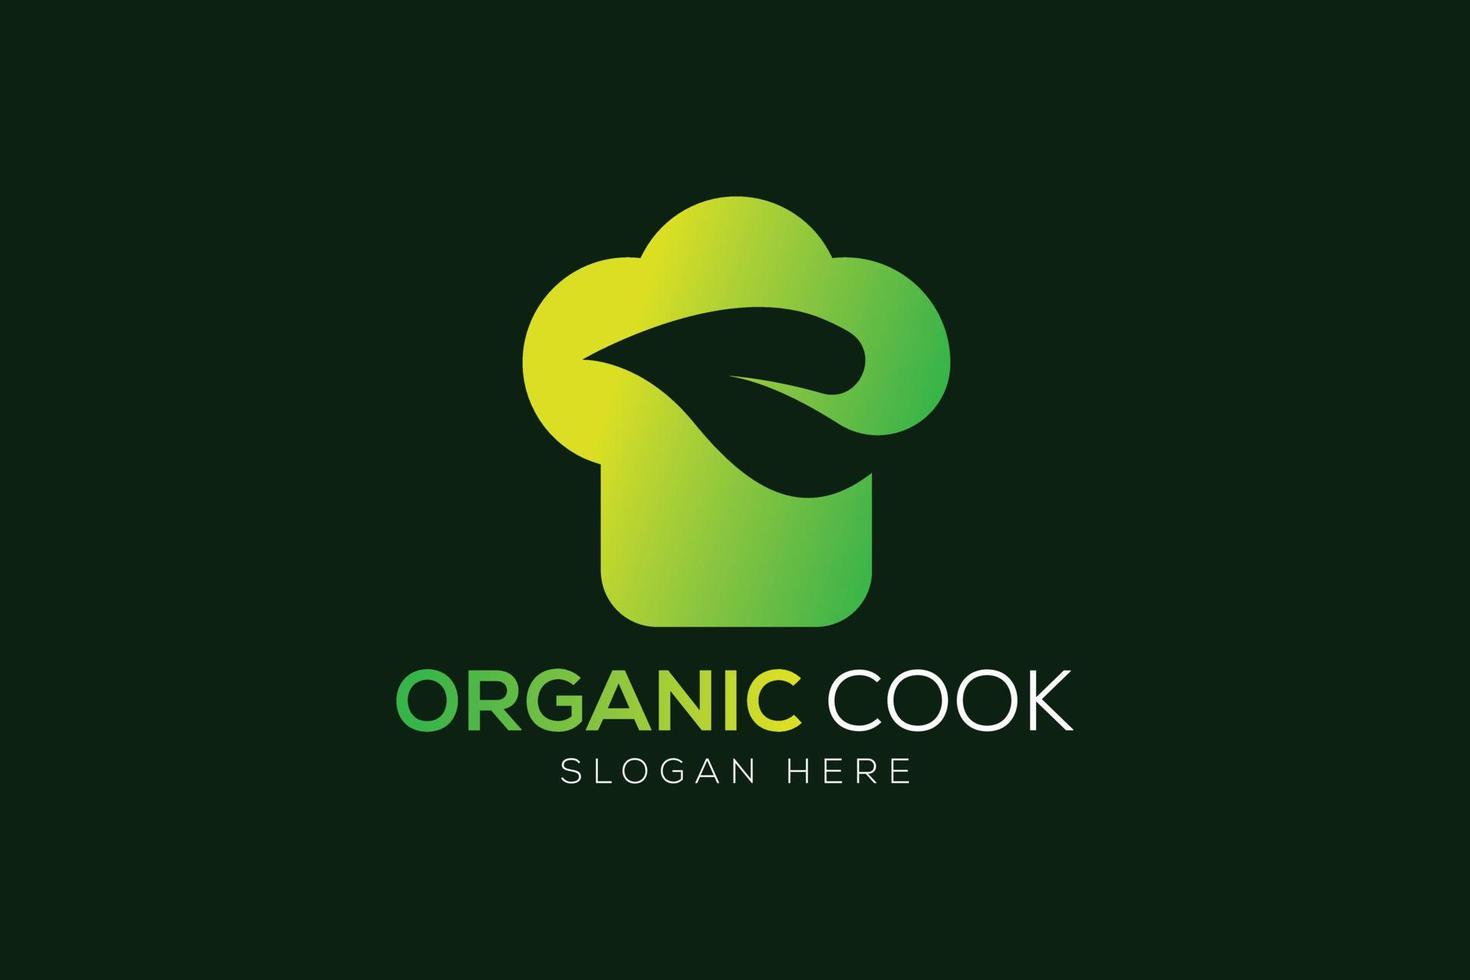 Chef hat and leaf logo or vegetarian cooking logo design vector